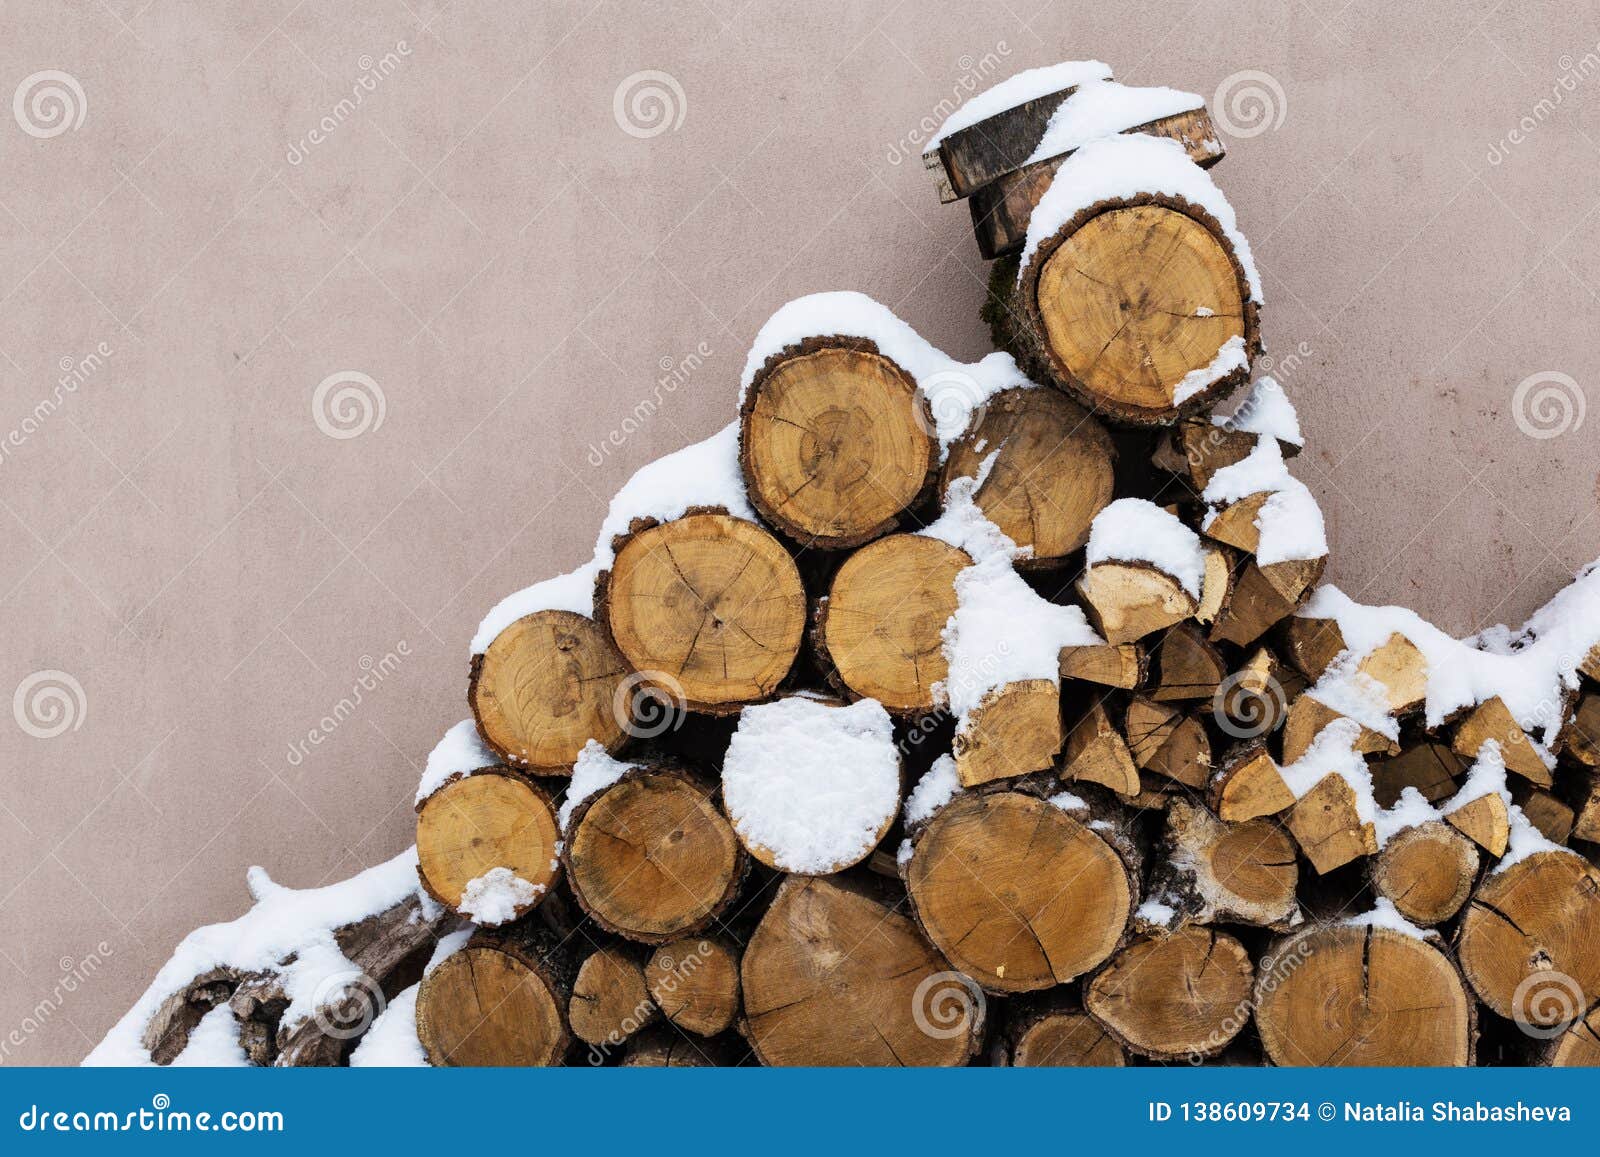 Acción tajada de la leña debajo de la nieve en la calle Leña para la chimenea y el Bbq. Leña apilada en invierno Pila de madera con la nieve apilada para la leña Pilas de leña nevada en el día de invierno frío